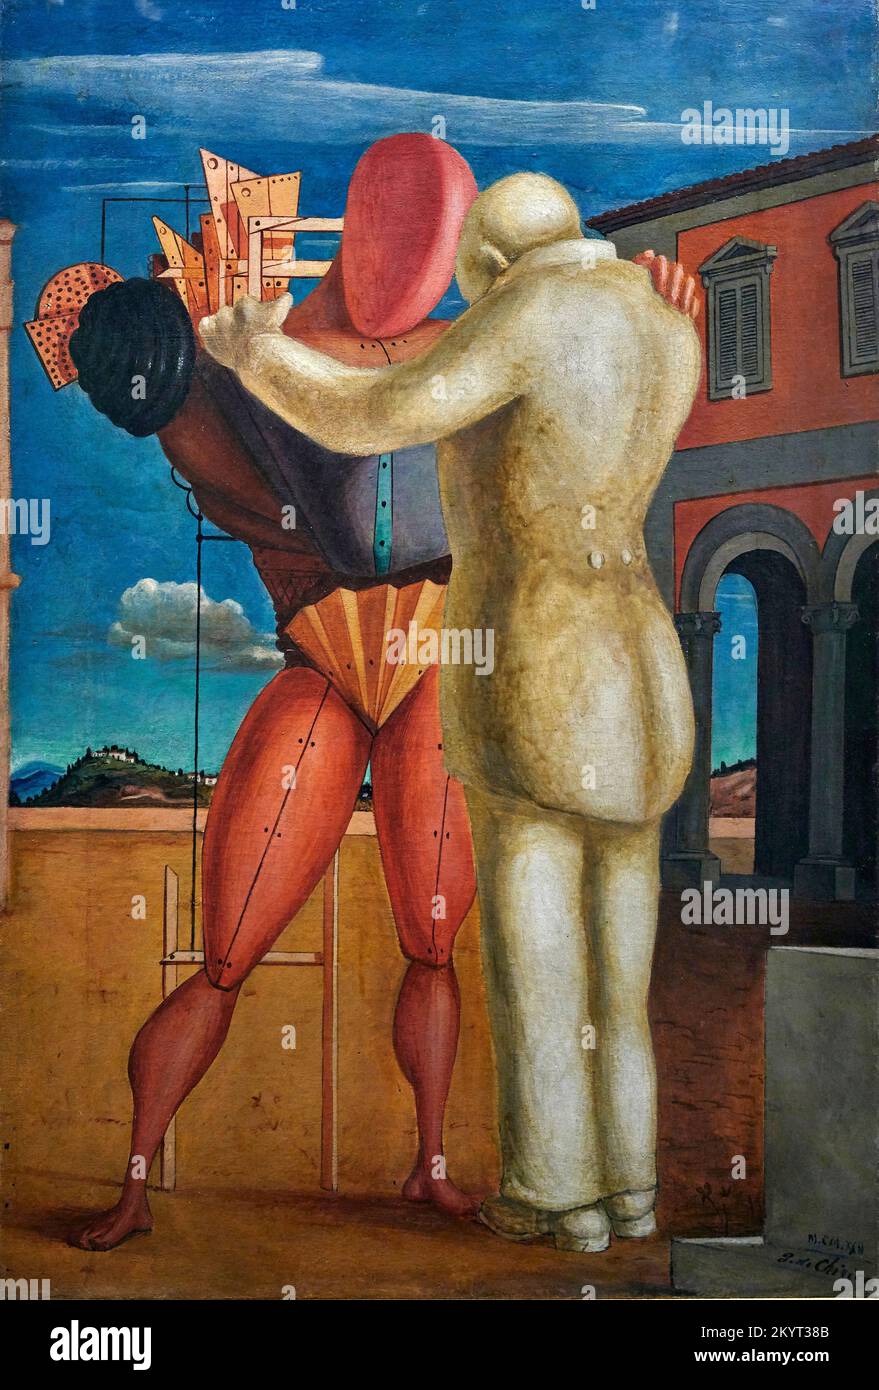 Il filgiol prodigo - olio su tela - Giorgio De Chirico - 1922 - Milano, Museo del Novecento Foto Stock